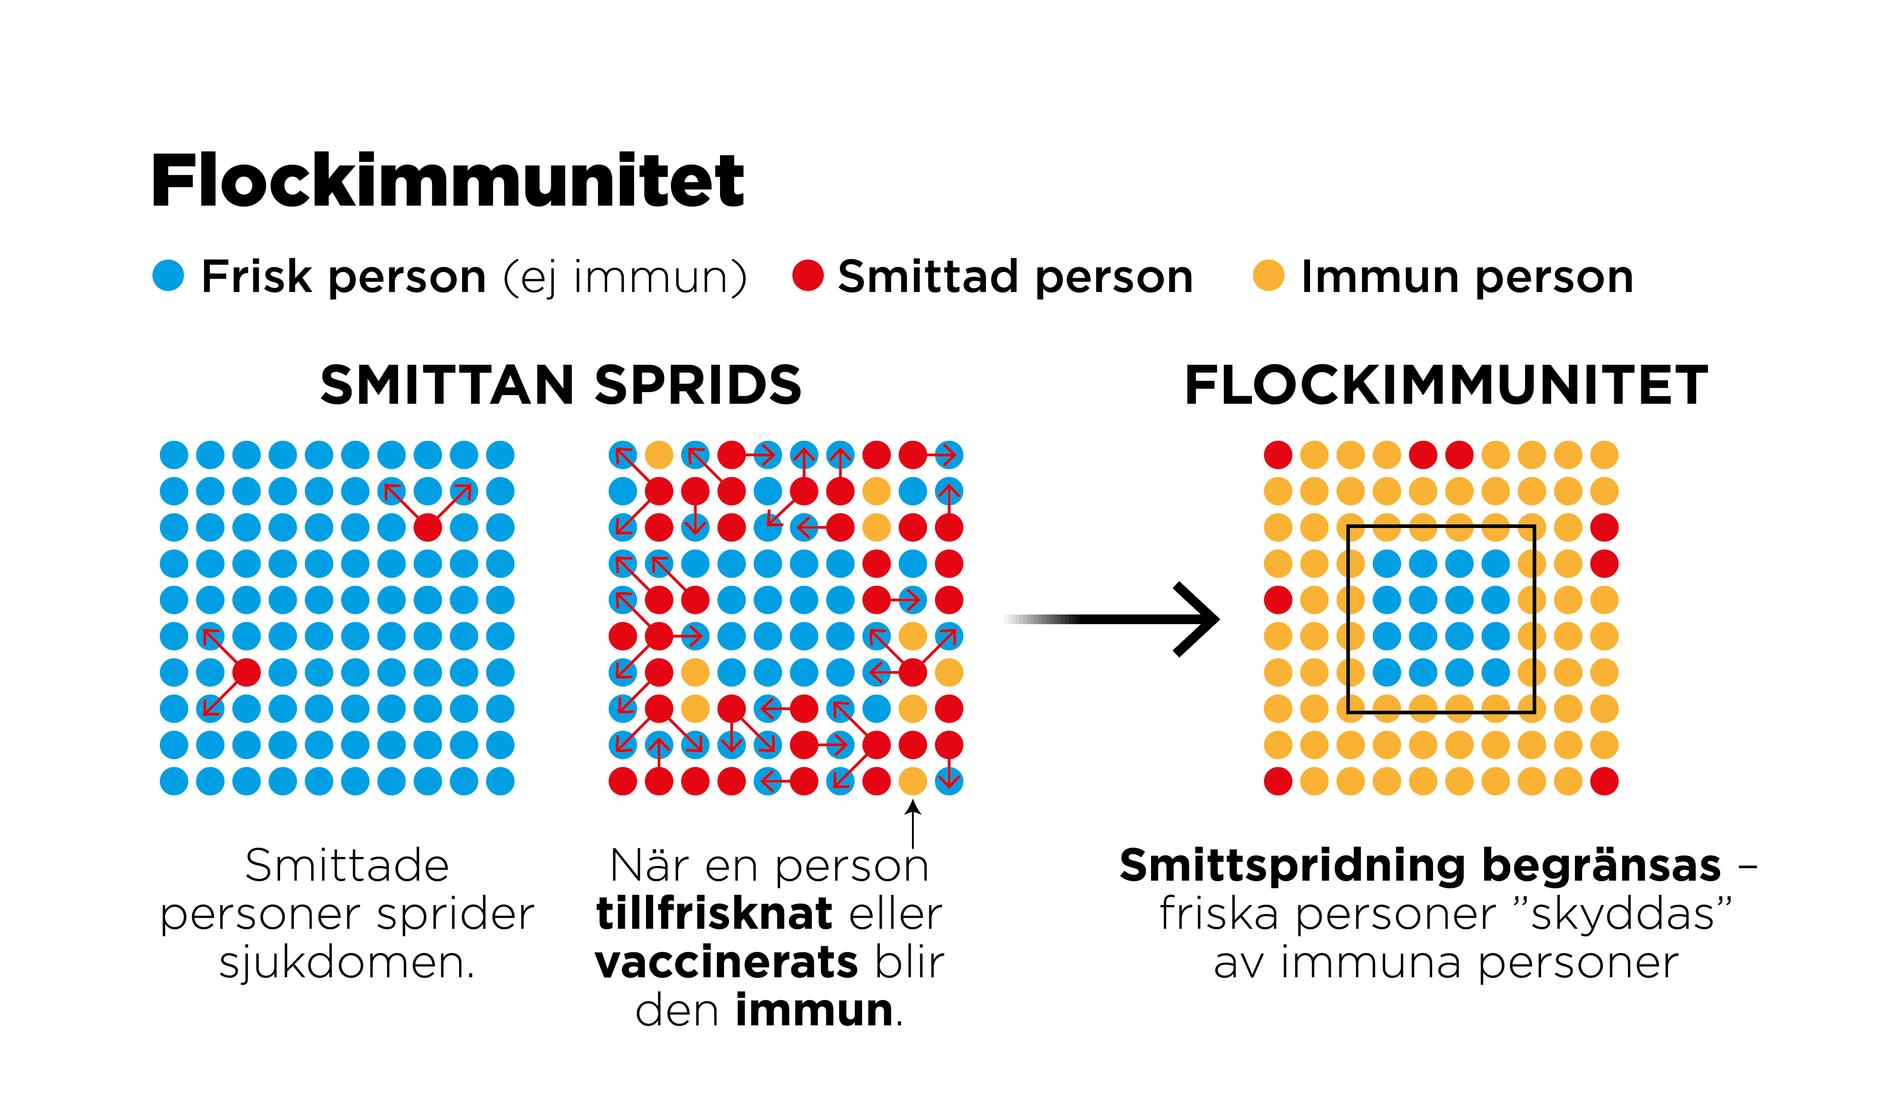 Flockimmunitet är ett epidemiologiskt begrepp om det fenomen som uppstår när en tillräckligt stor andel av befolkningen är immun mot ett visst smittämne.